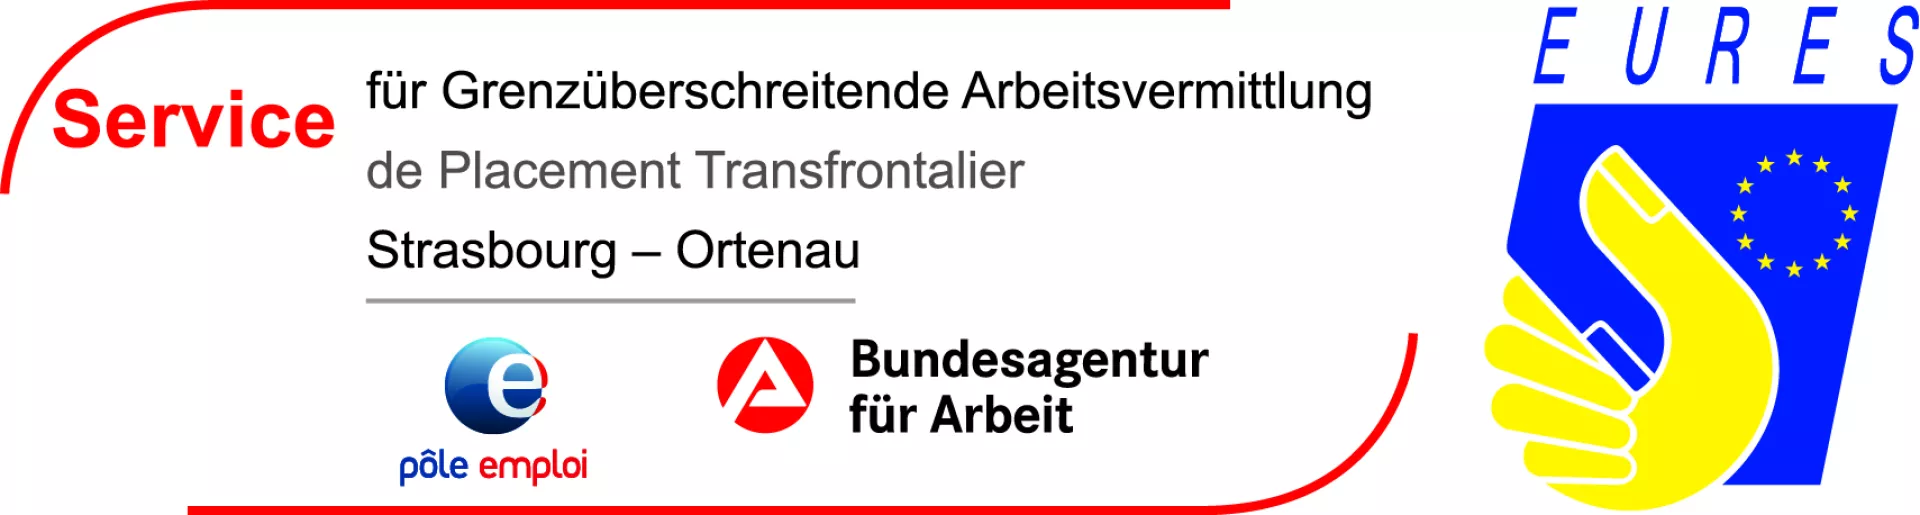 Logo des Service für Grenzüberschreitende Arbeitsvermittlung